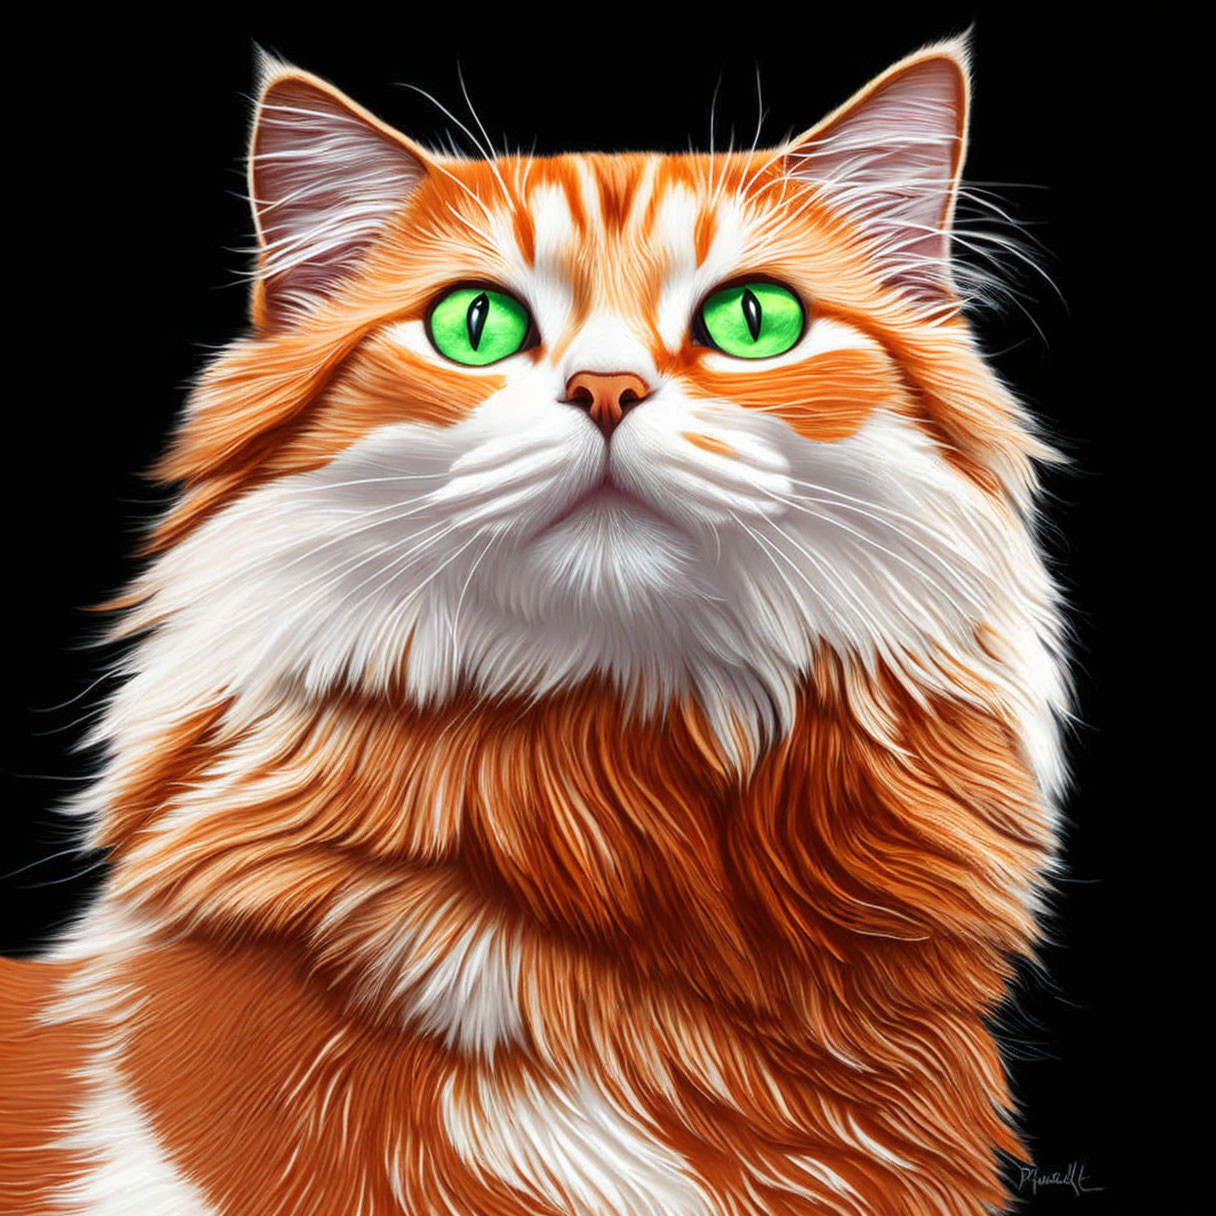 Orange-White Cat Illustration with Green Eyes on Black Background